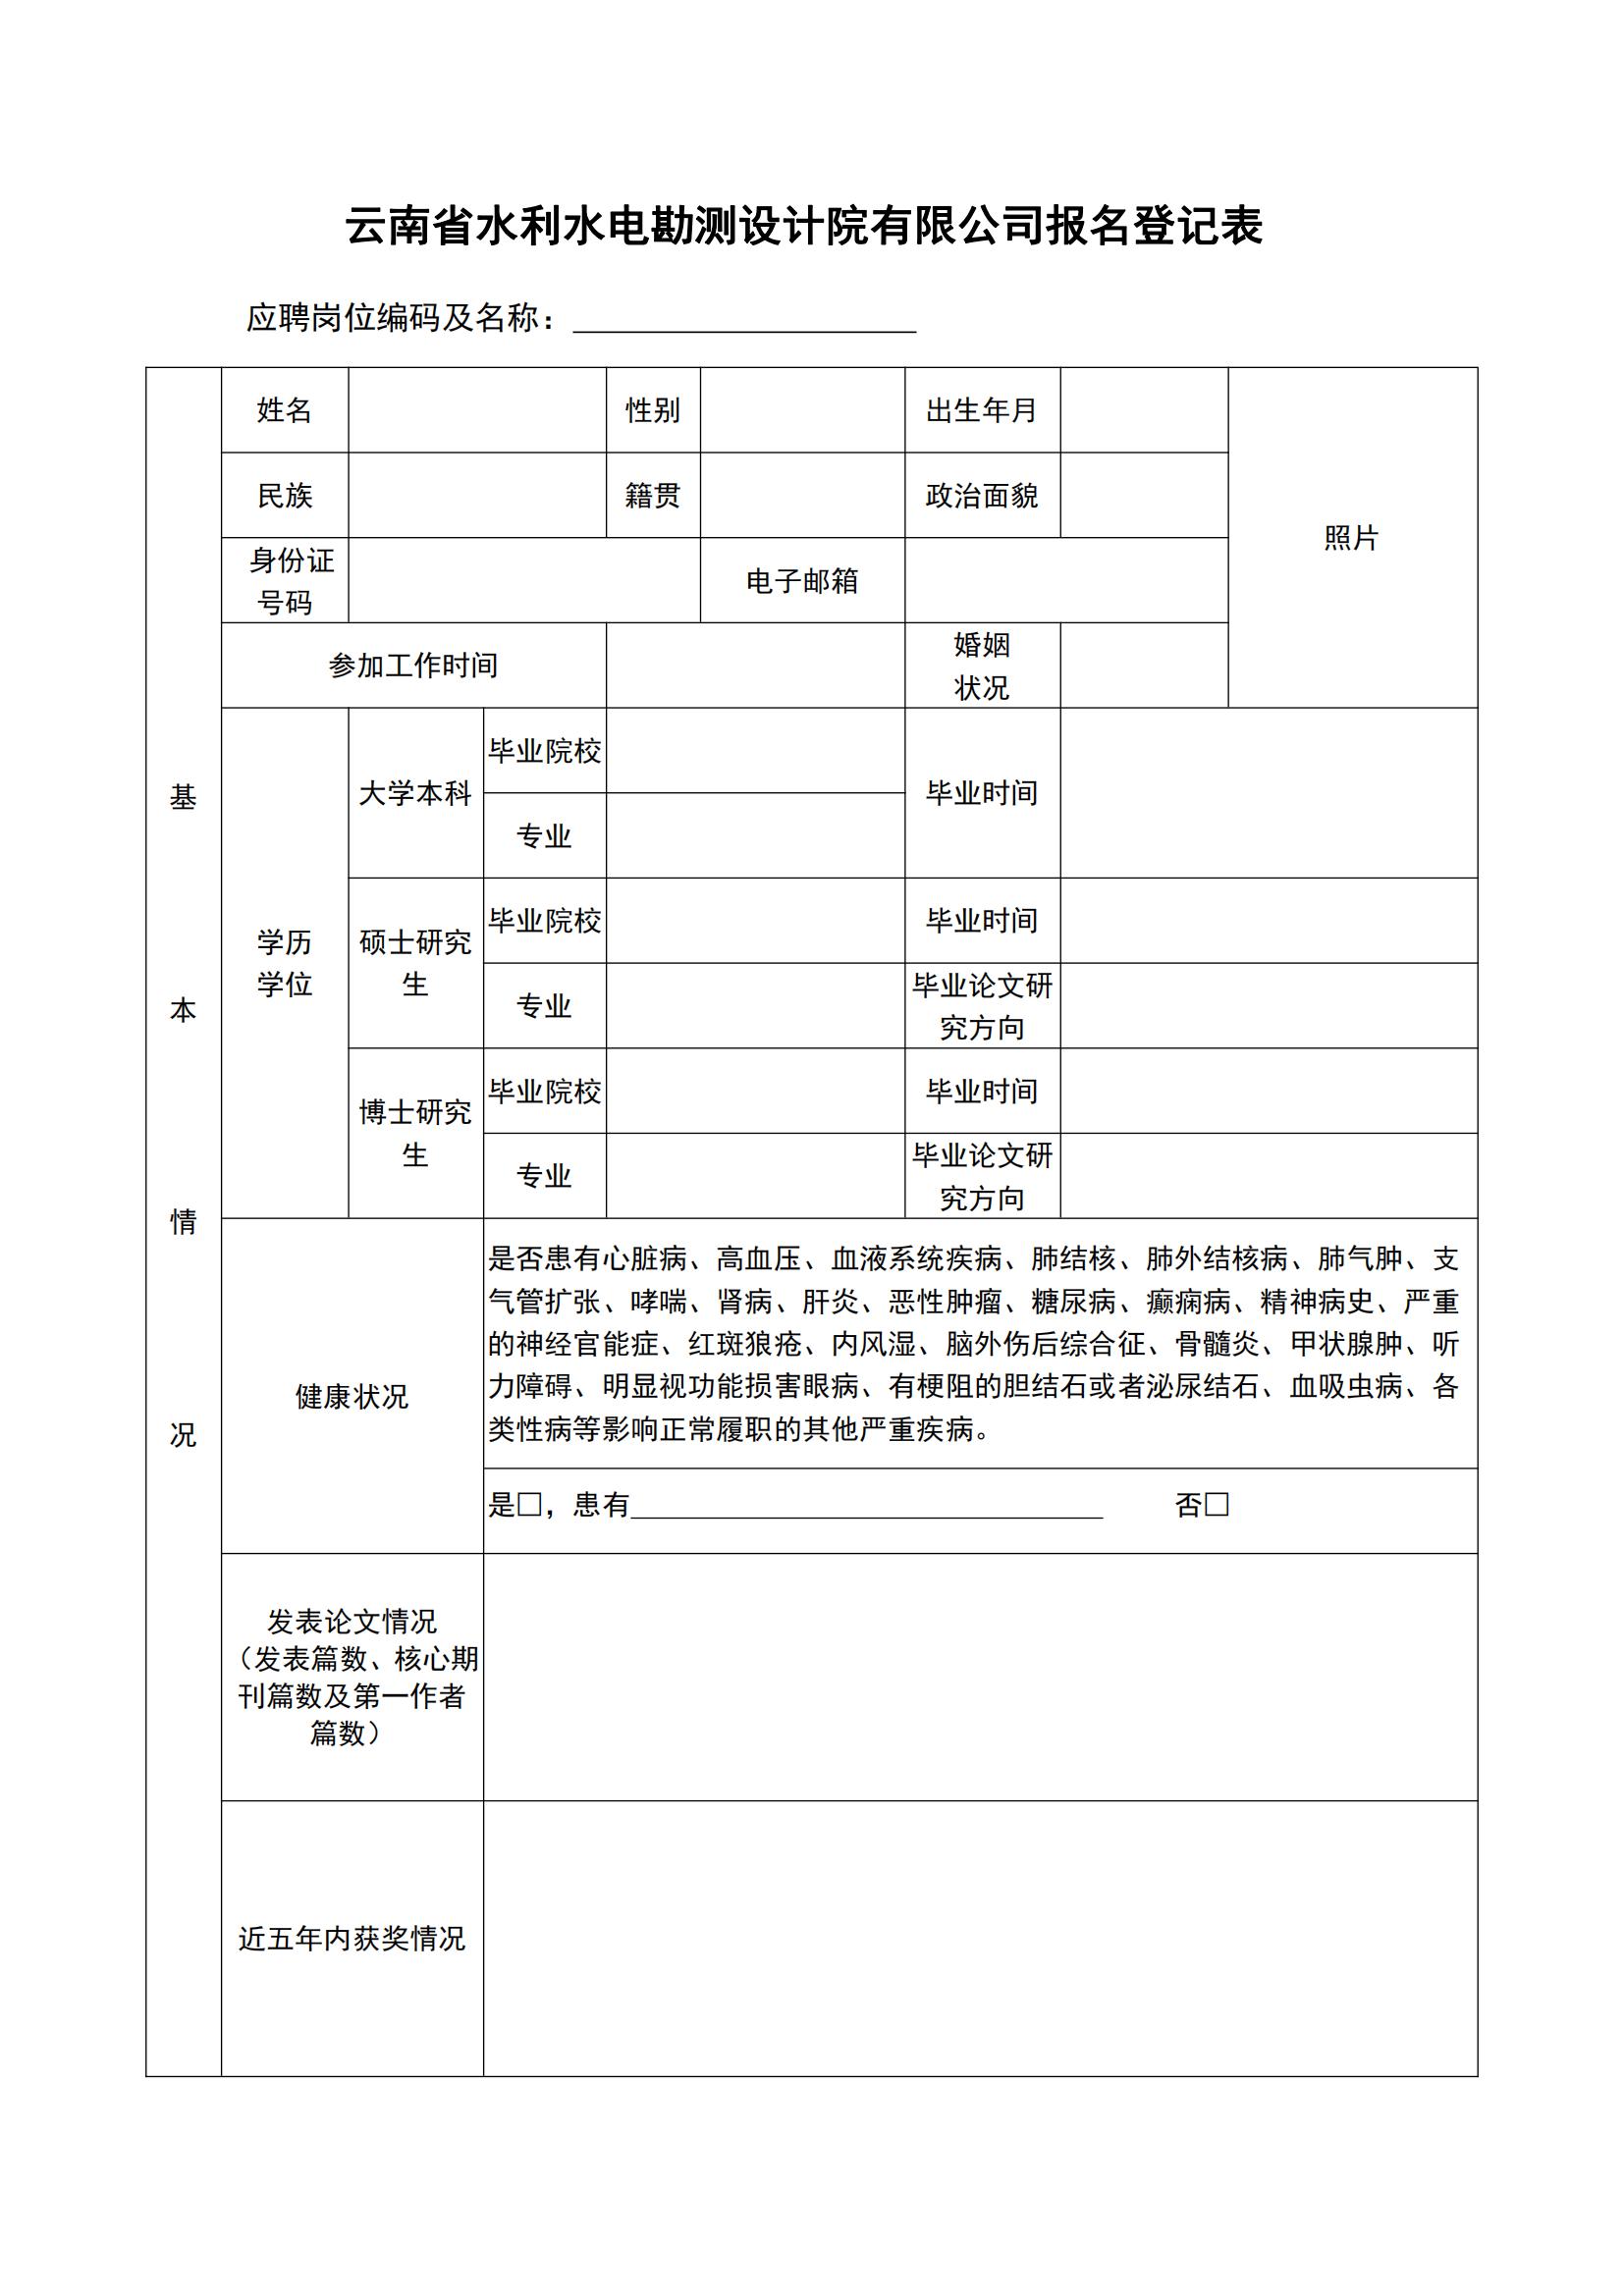 云南省水利水电勘测设计院有限公司报名登记表_00.jpg